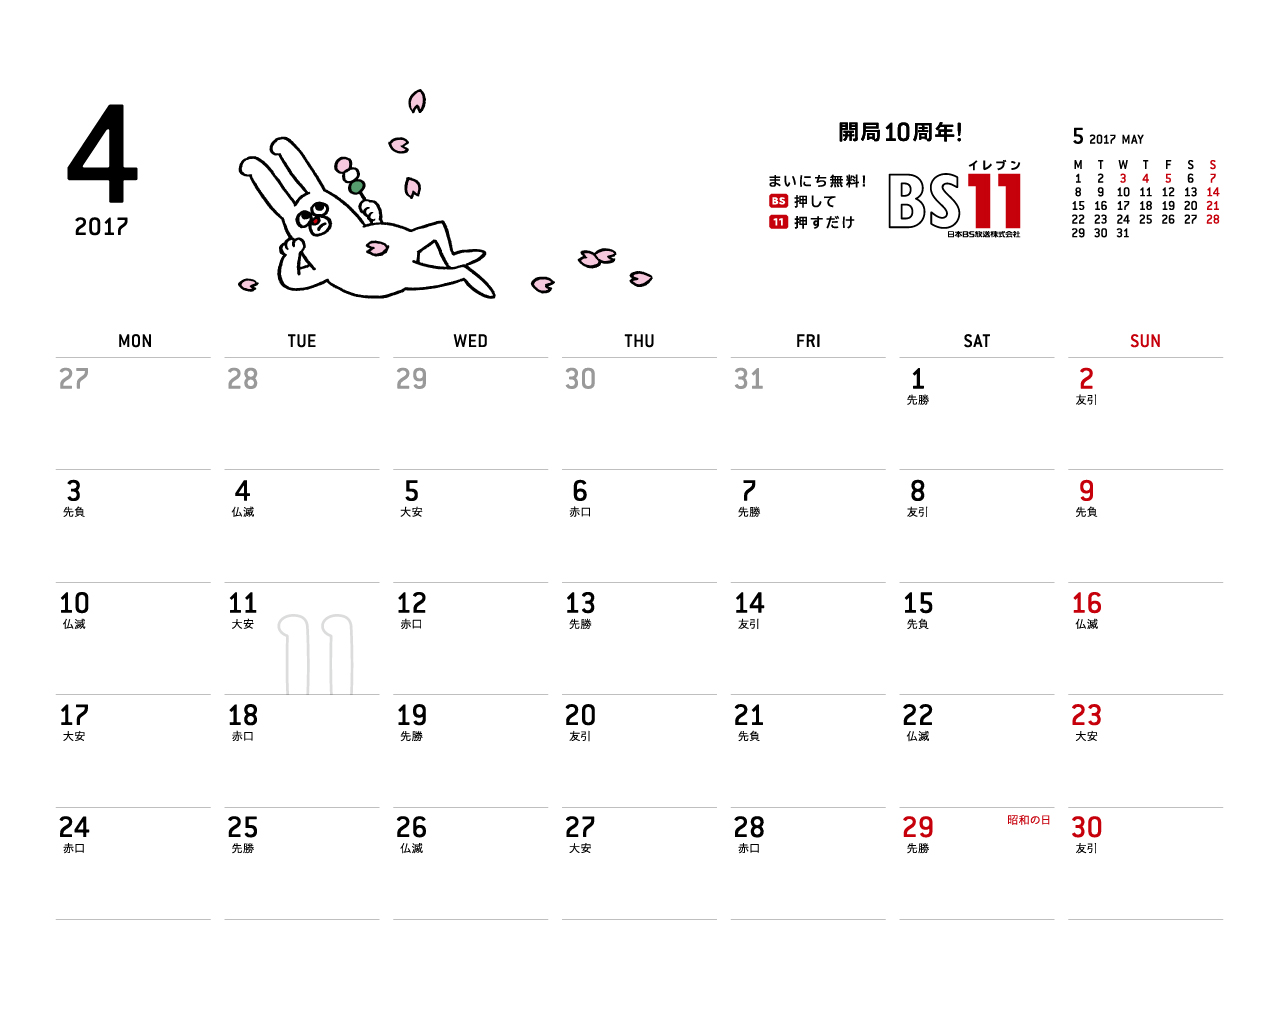 じゅういっちゃんのデジタルカレンダー2017年04月 Bs11 イレブン いつでも無料放送